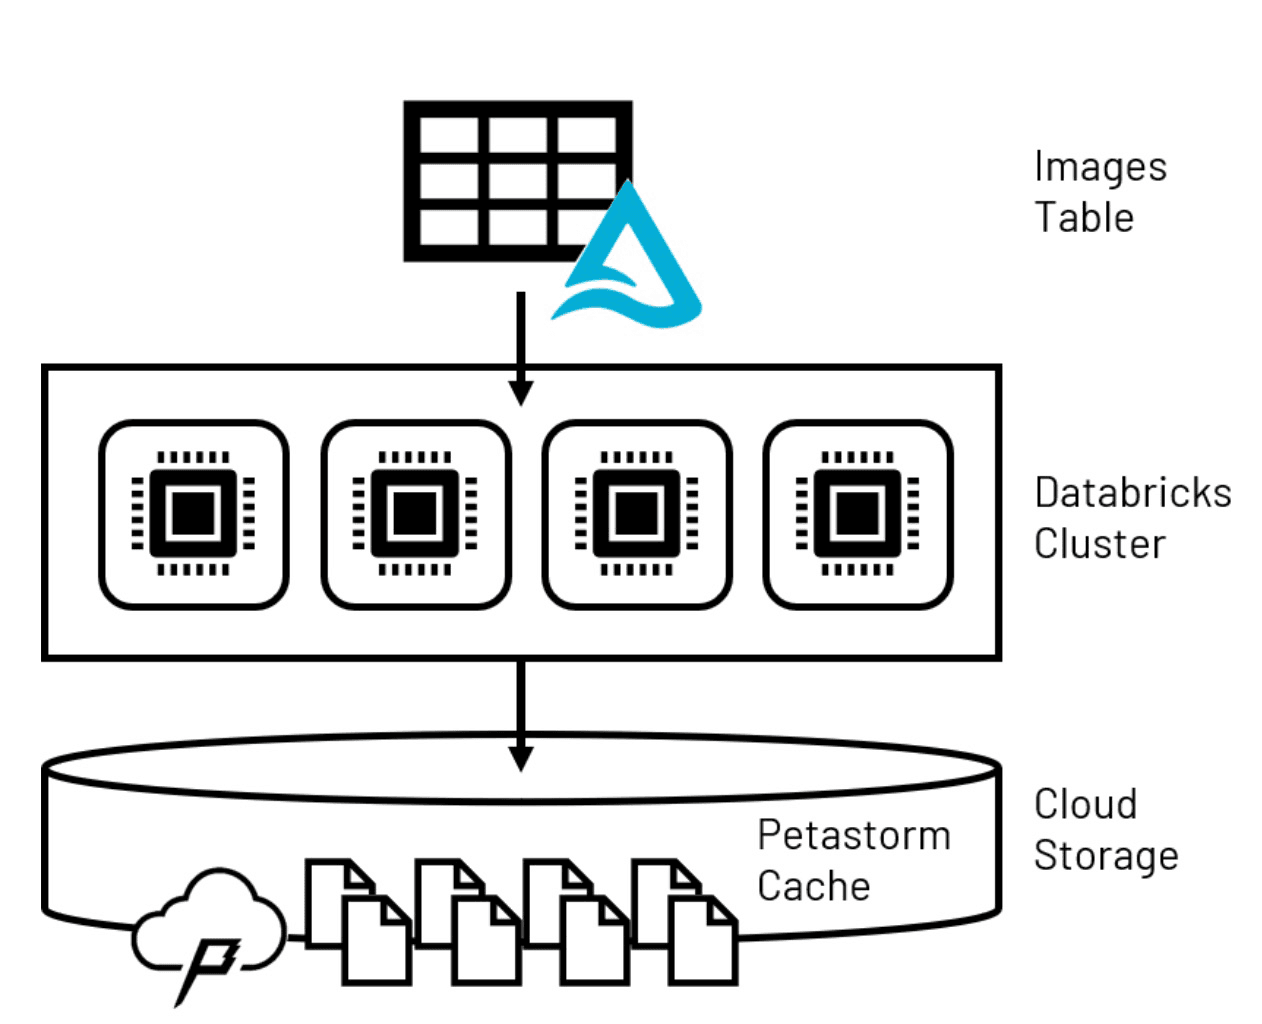 Lakehouse数据保存到临时Petastorm缓存,通常用于计算机视觉的用例。